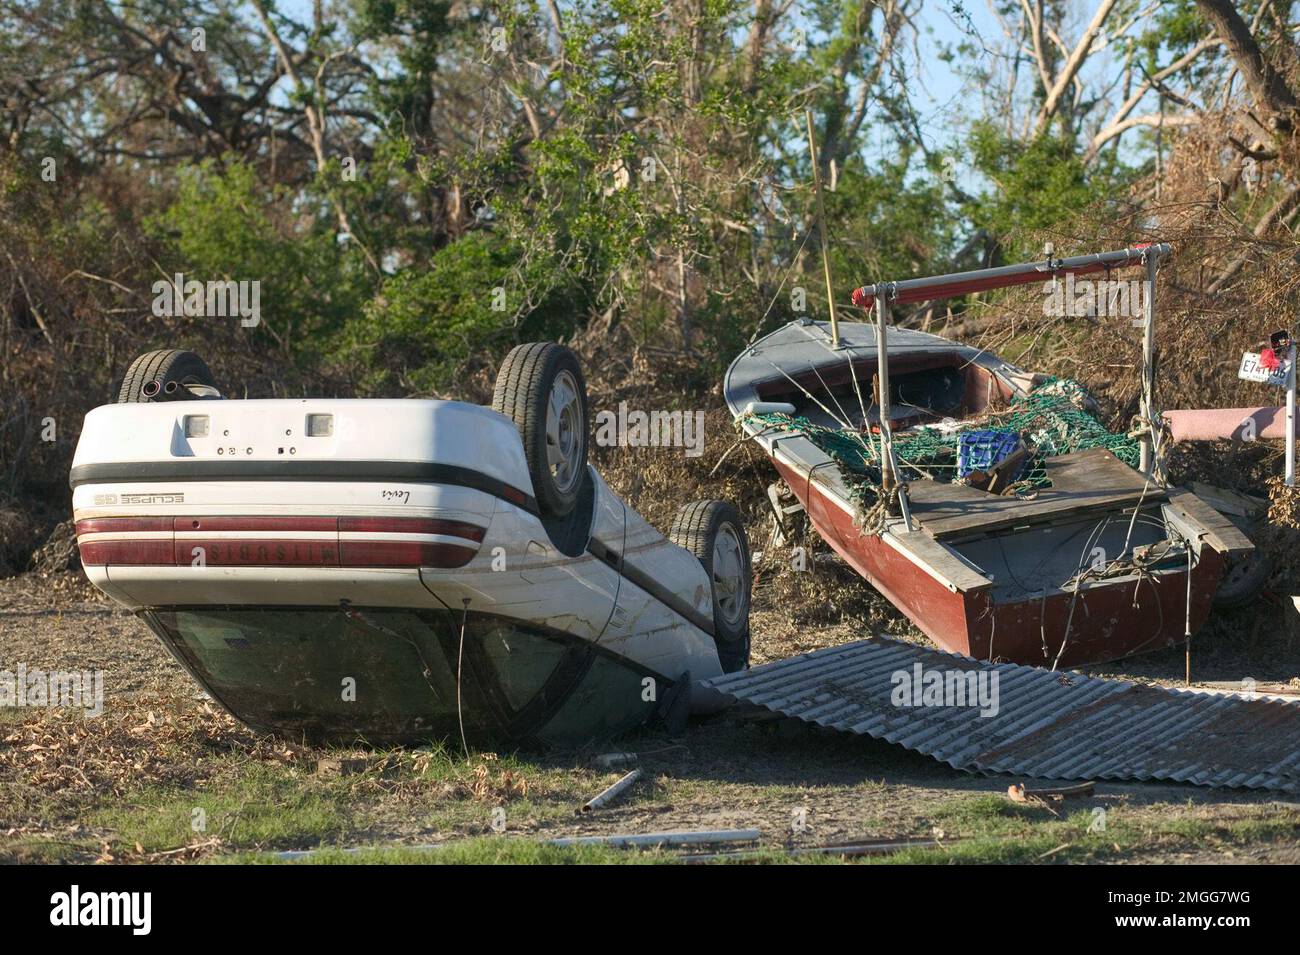 Nachtruhe - Pfarrei - 26-HK-42-60. Plaquemineschäden--umgestürztes Fahrzeug und verlorenes Boot in der Nähe von Bäumen--von Andrea Booher-FEMA. Hurrikan Katrina Stockfoto